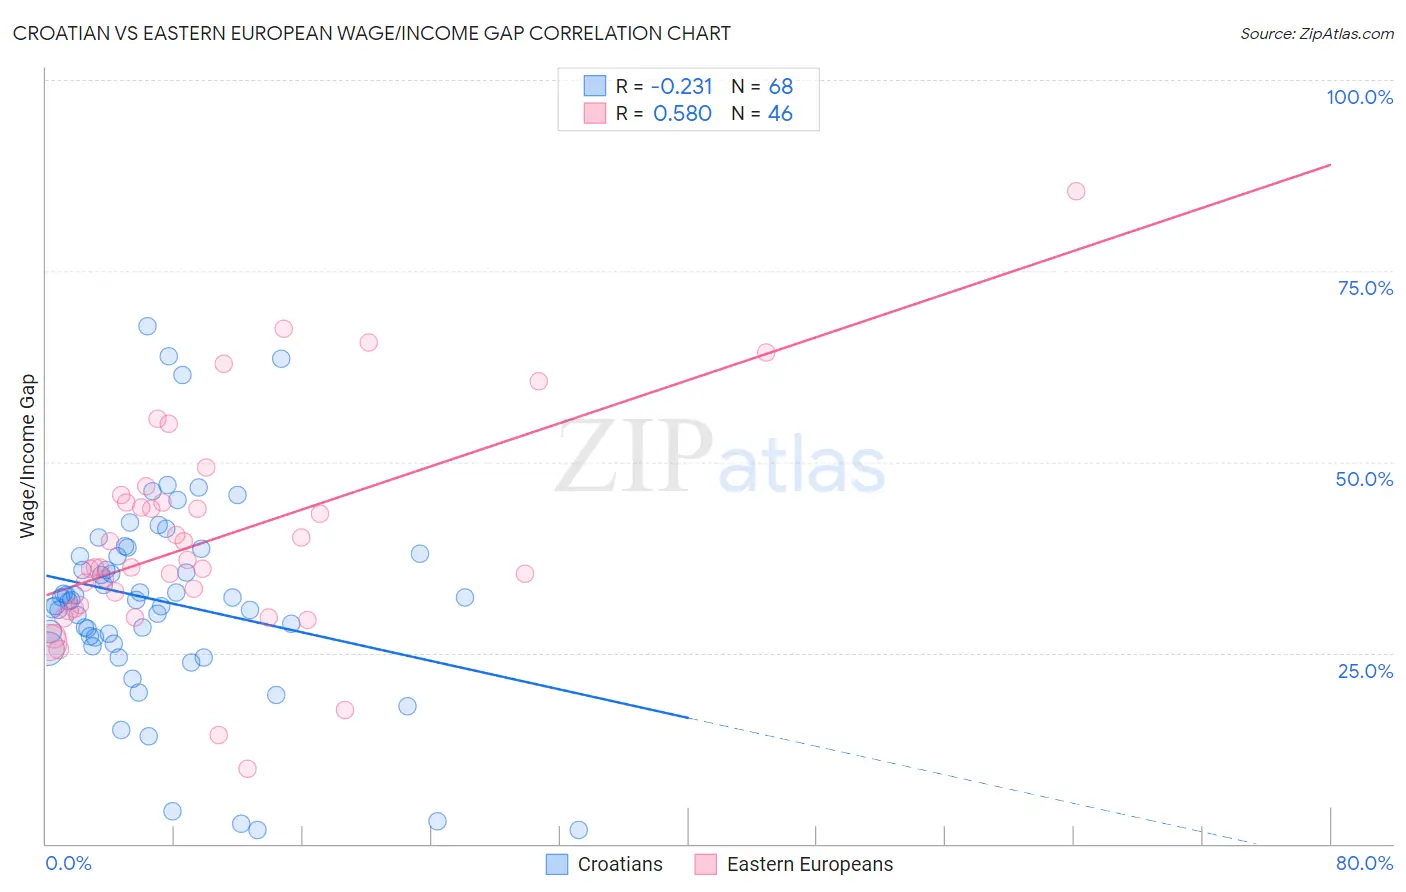 Croatian vs Eastern European Wage/Income Gap